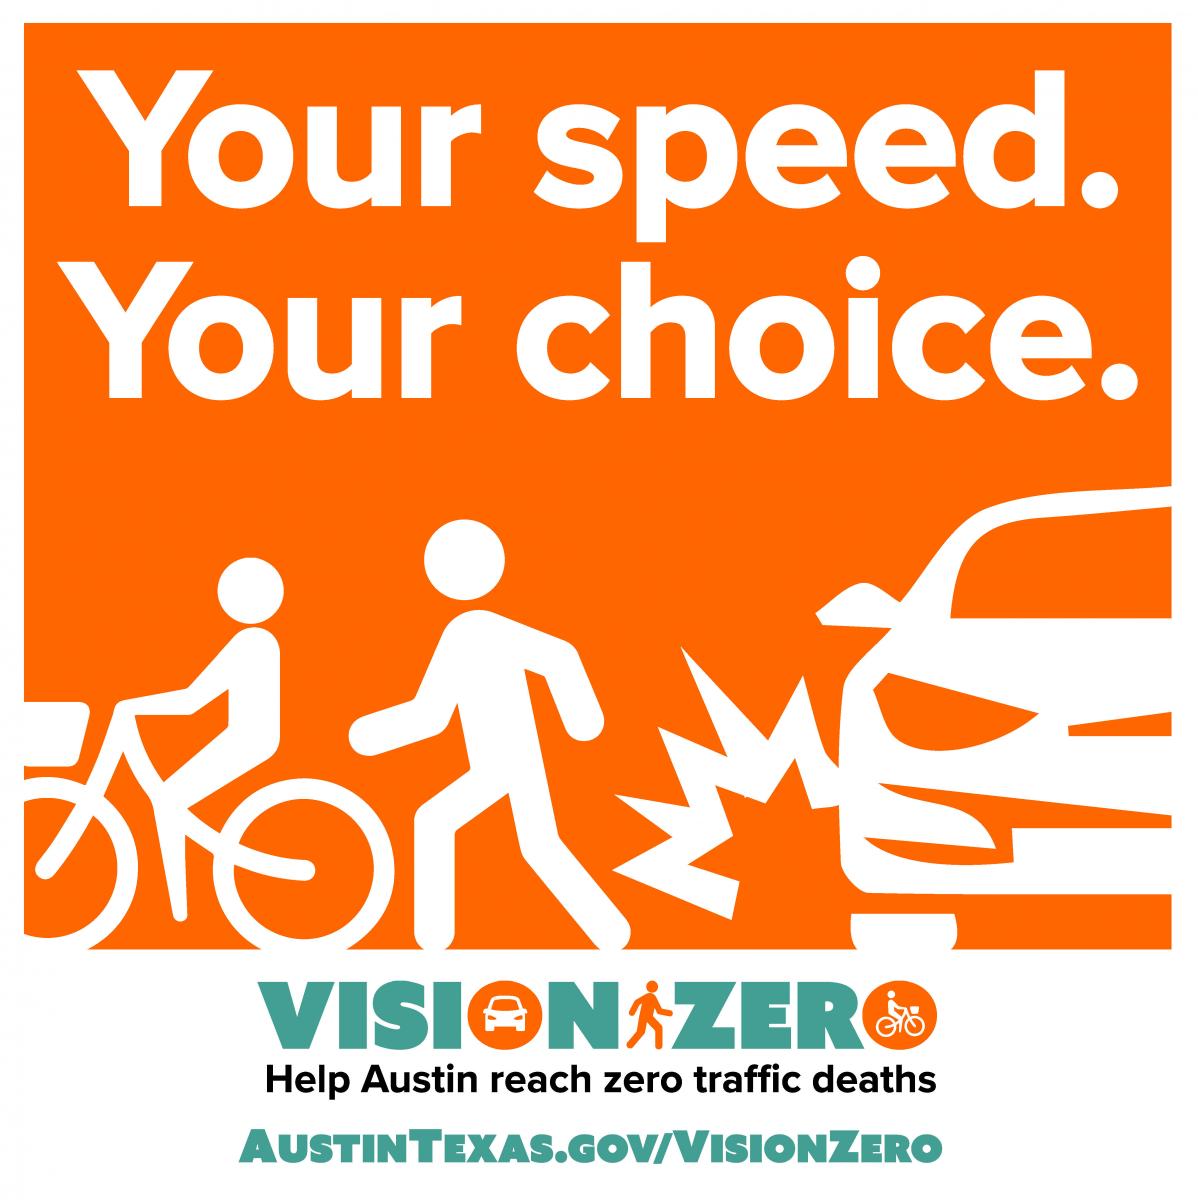 Your speed. Your choice. Vision Zero. Help Austin Reach Zero Traffic Deaths. AustinTexas,gov/VisionZero.